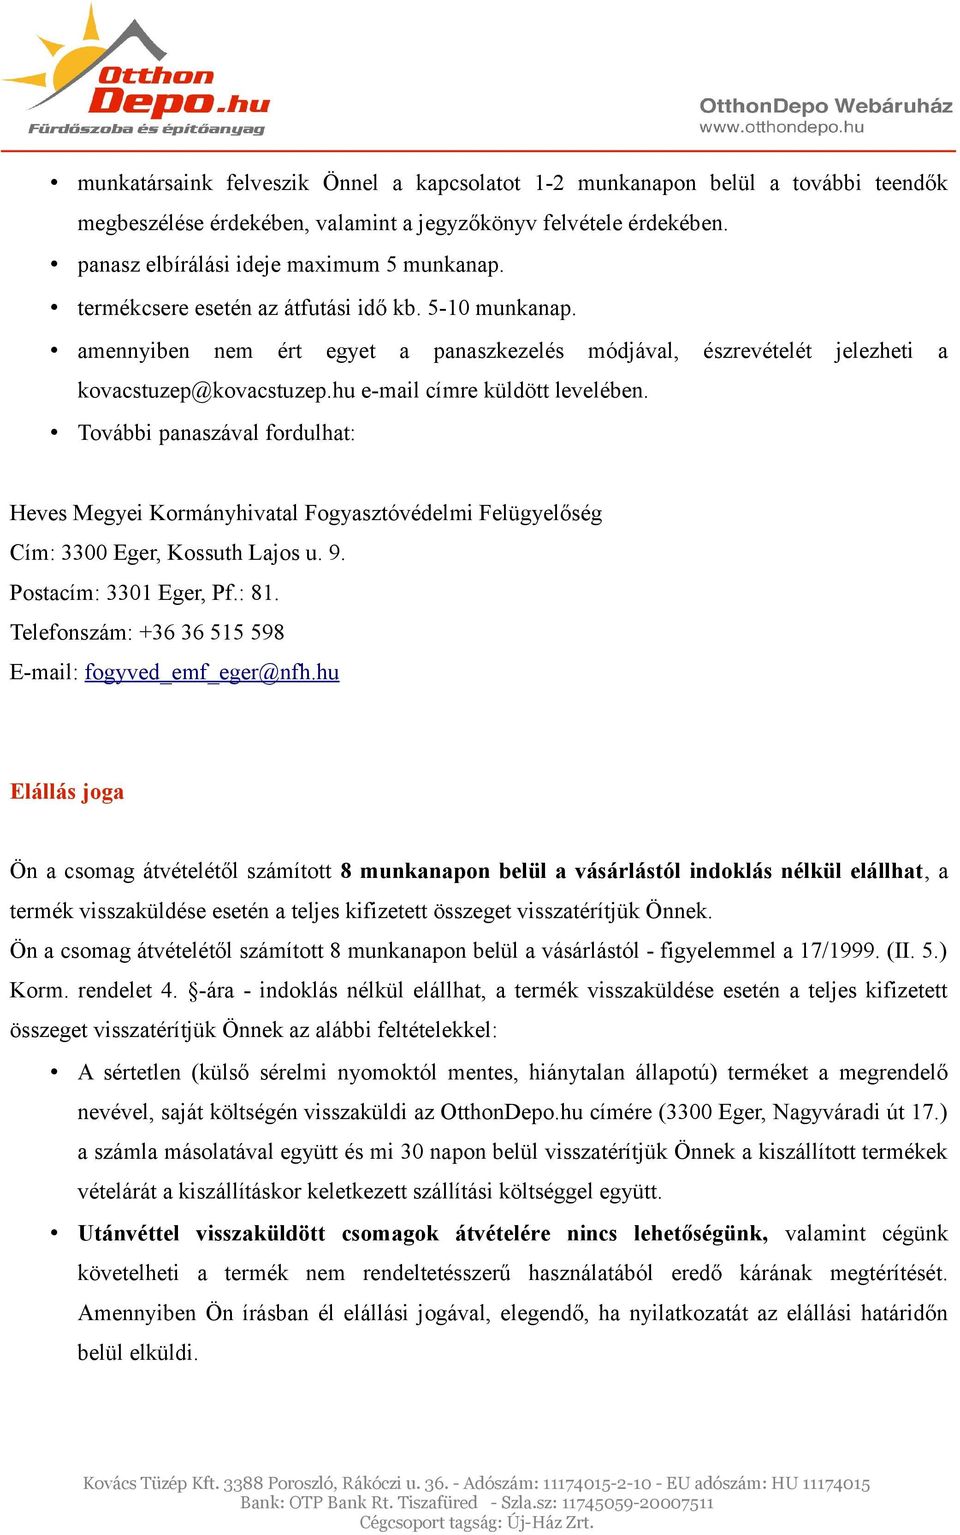 OtthonDepo.hu Webáruház. Vásárlási tudnivalók, üzletszabályzat - PDF  Ingyenes letöltés